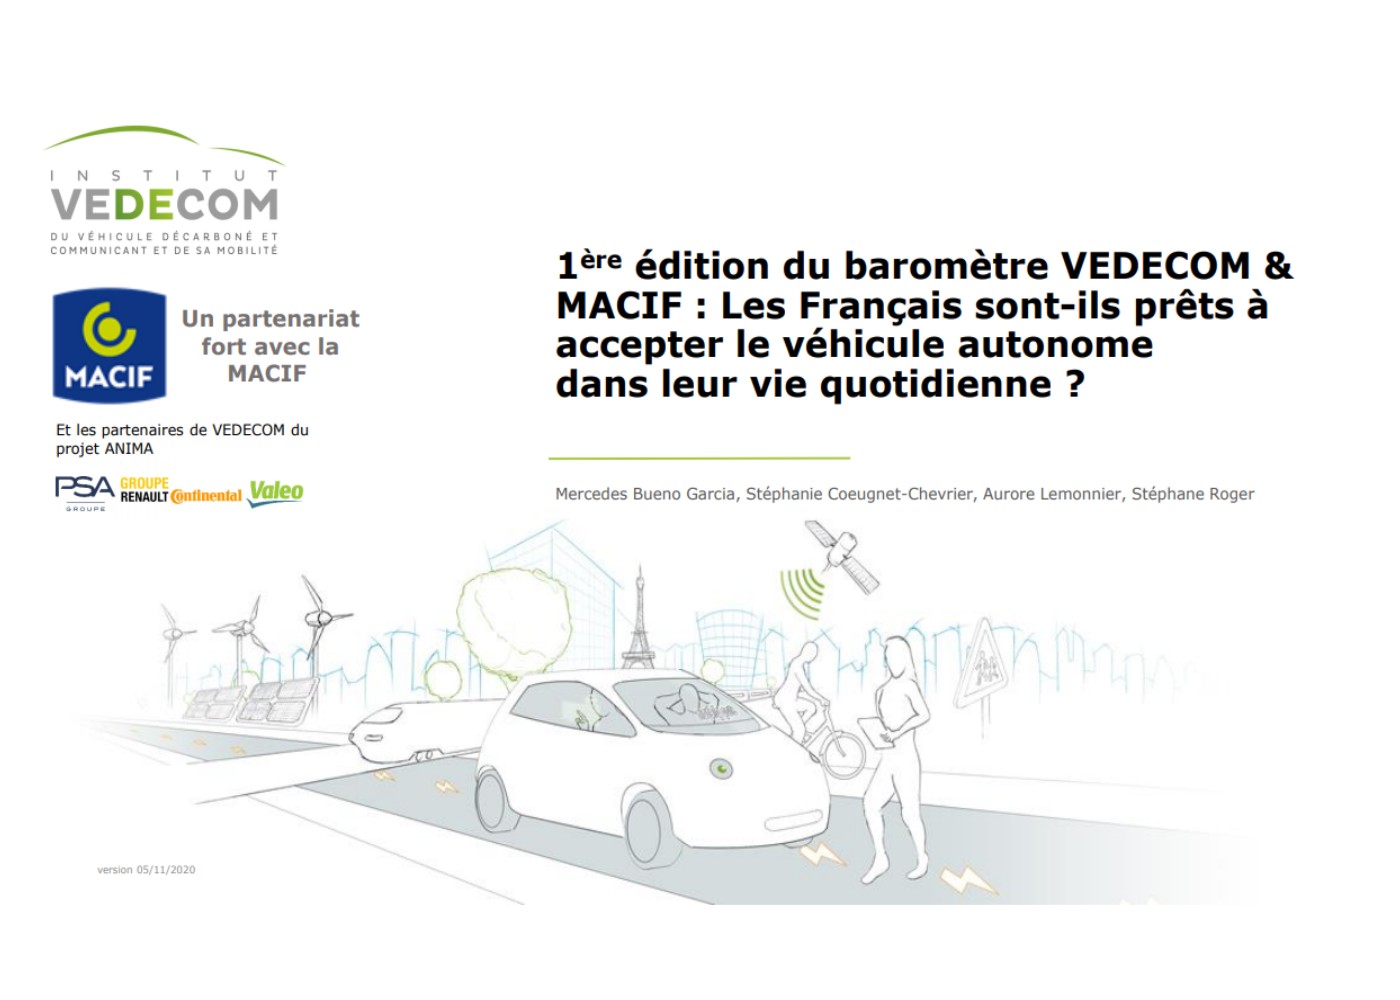 Les Français sont-ils prêts à accepter le véhicule autonome ?